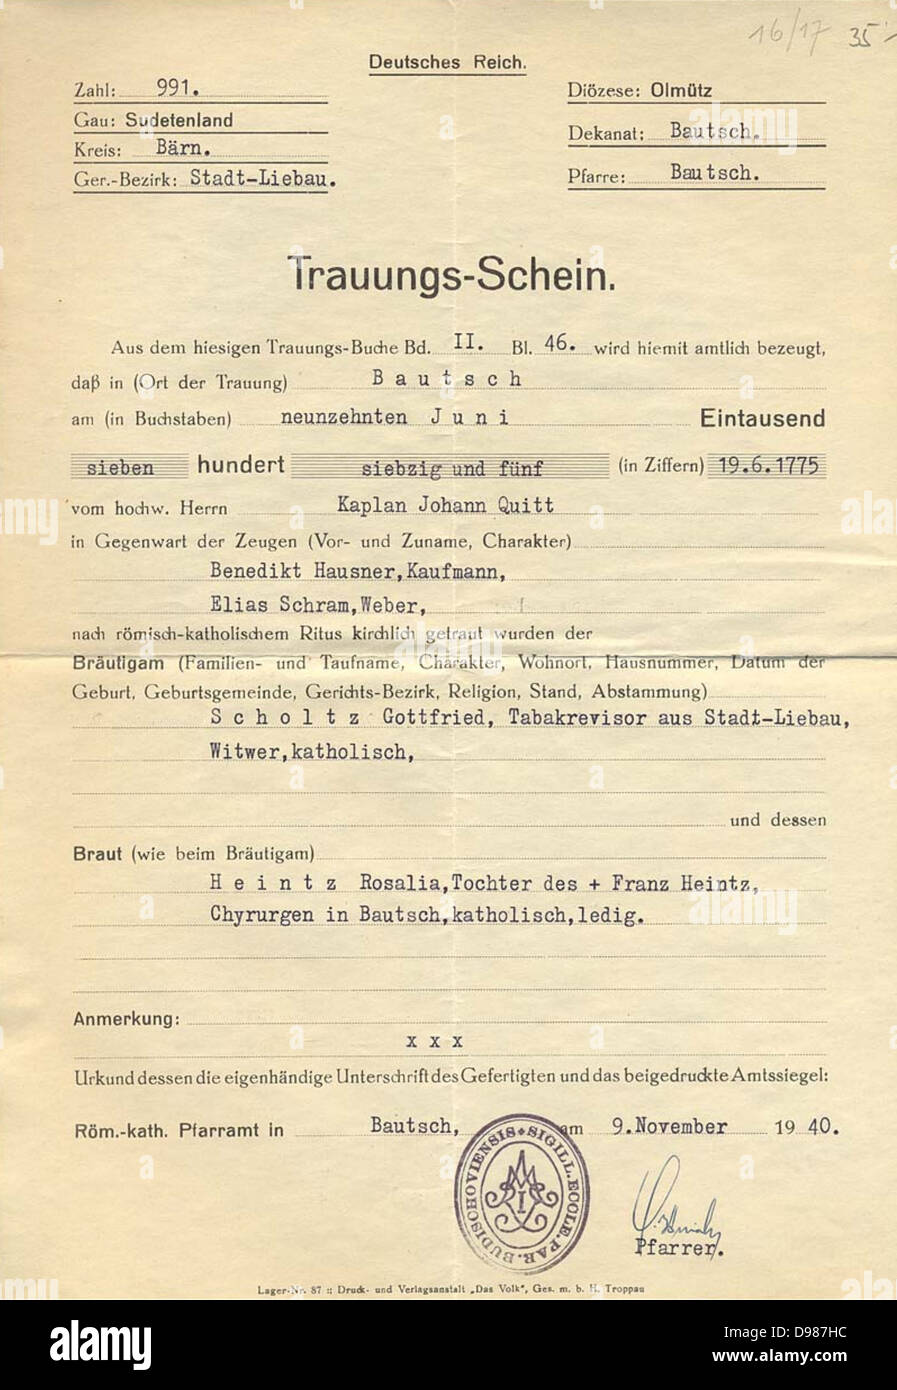 Allemagne : certificat de mariage pour un couple marié en 1775, document daté de 1940. Les documents comme Les CE ont été utilisés pour établir l'ascendance aryenne. Banque D'Images